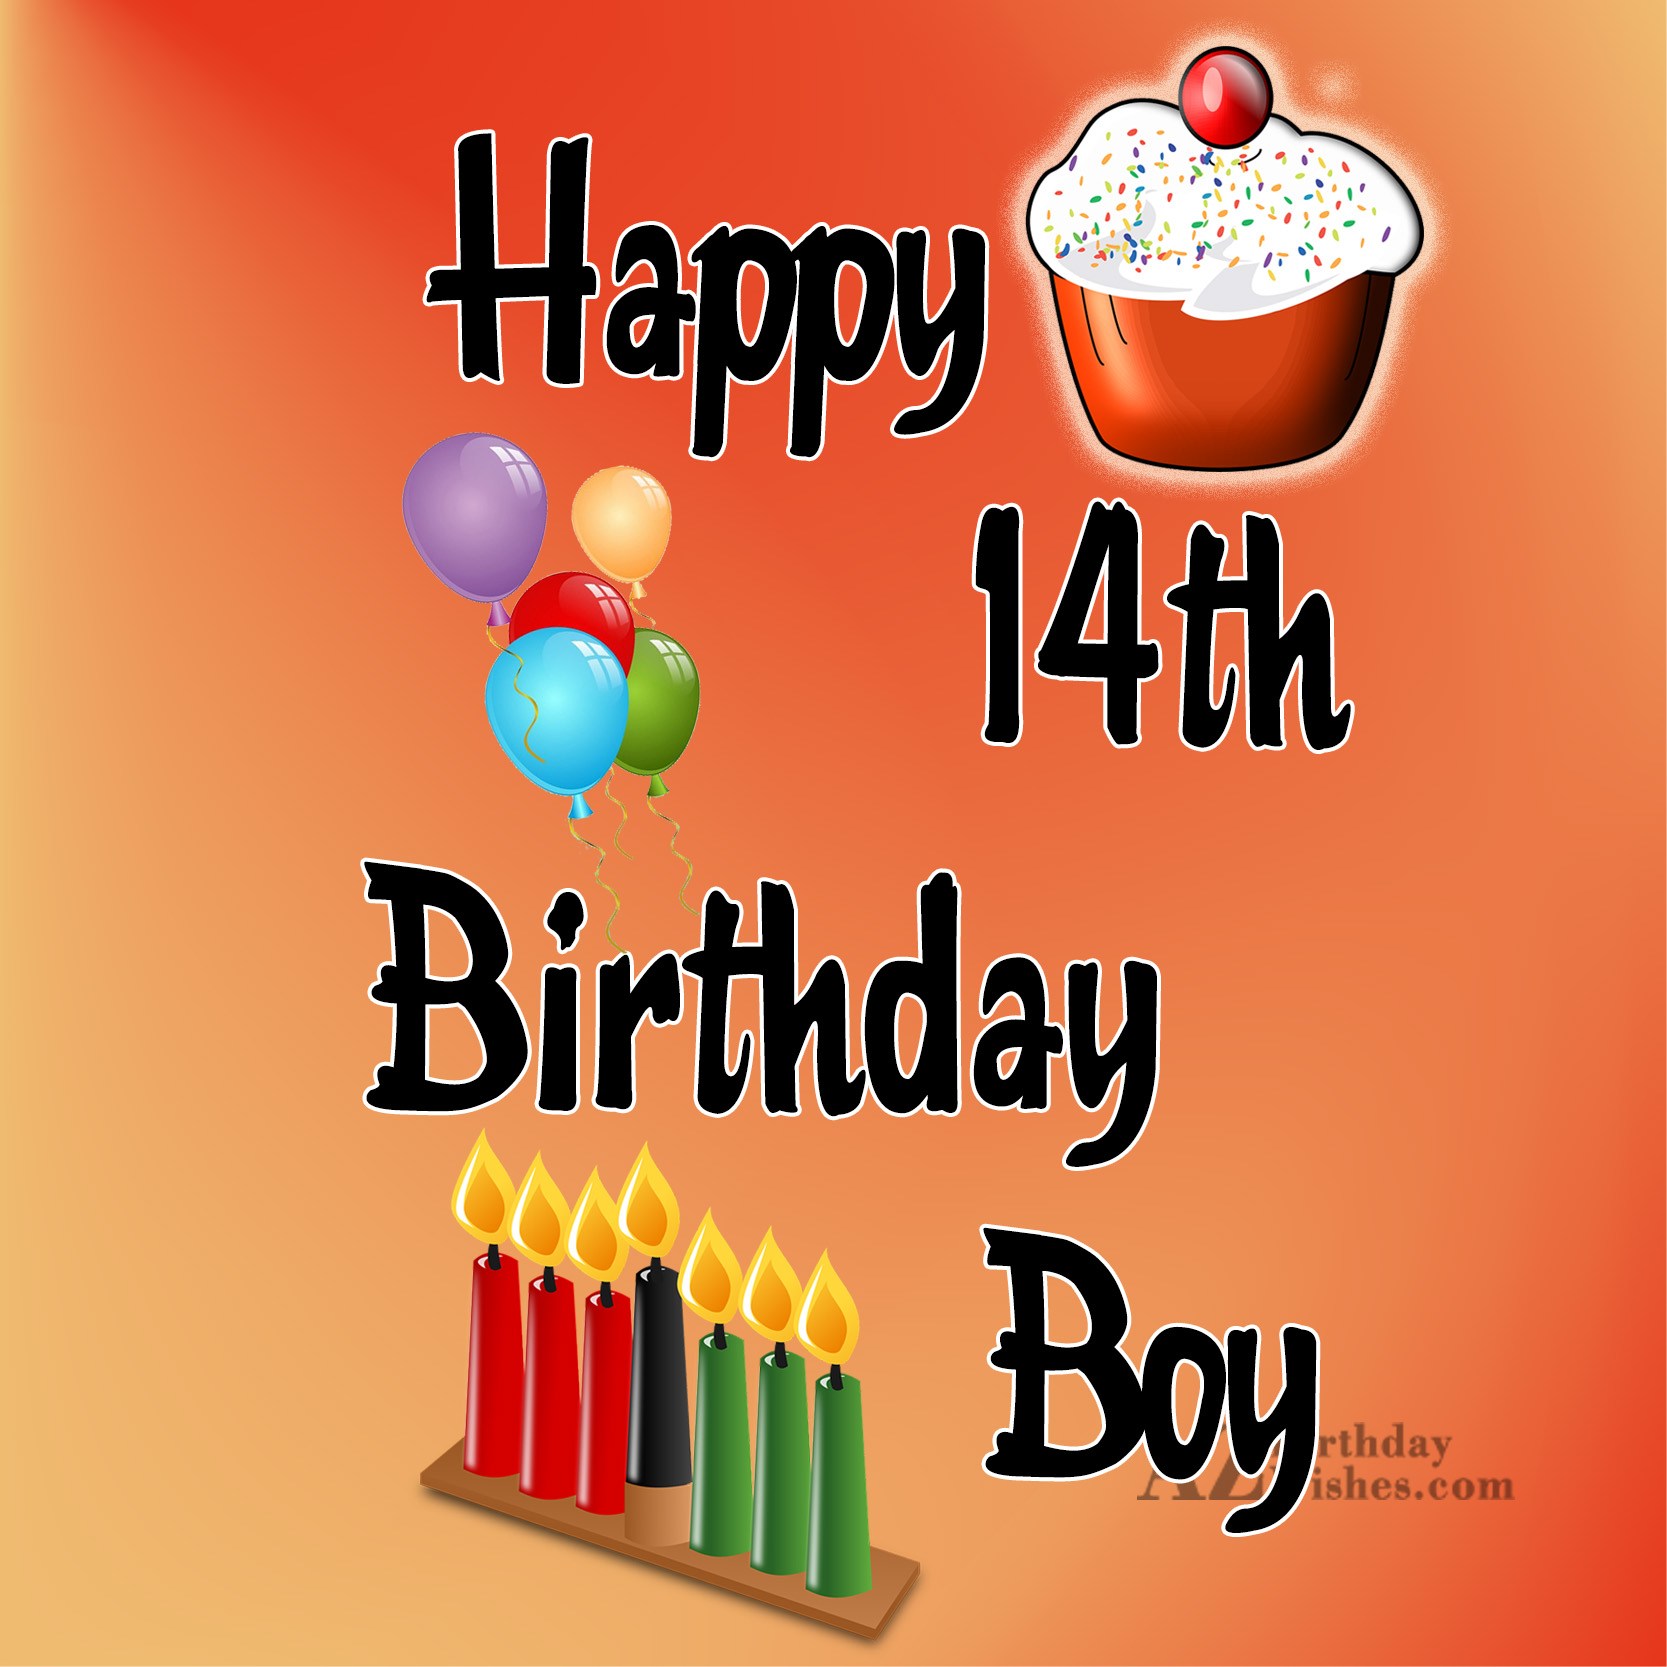 a href="https://www.azbirthdaywishes.com/happy-14th-birthday-boy/"...